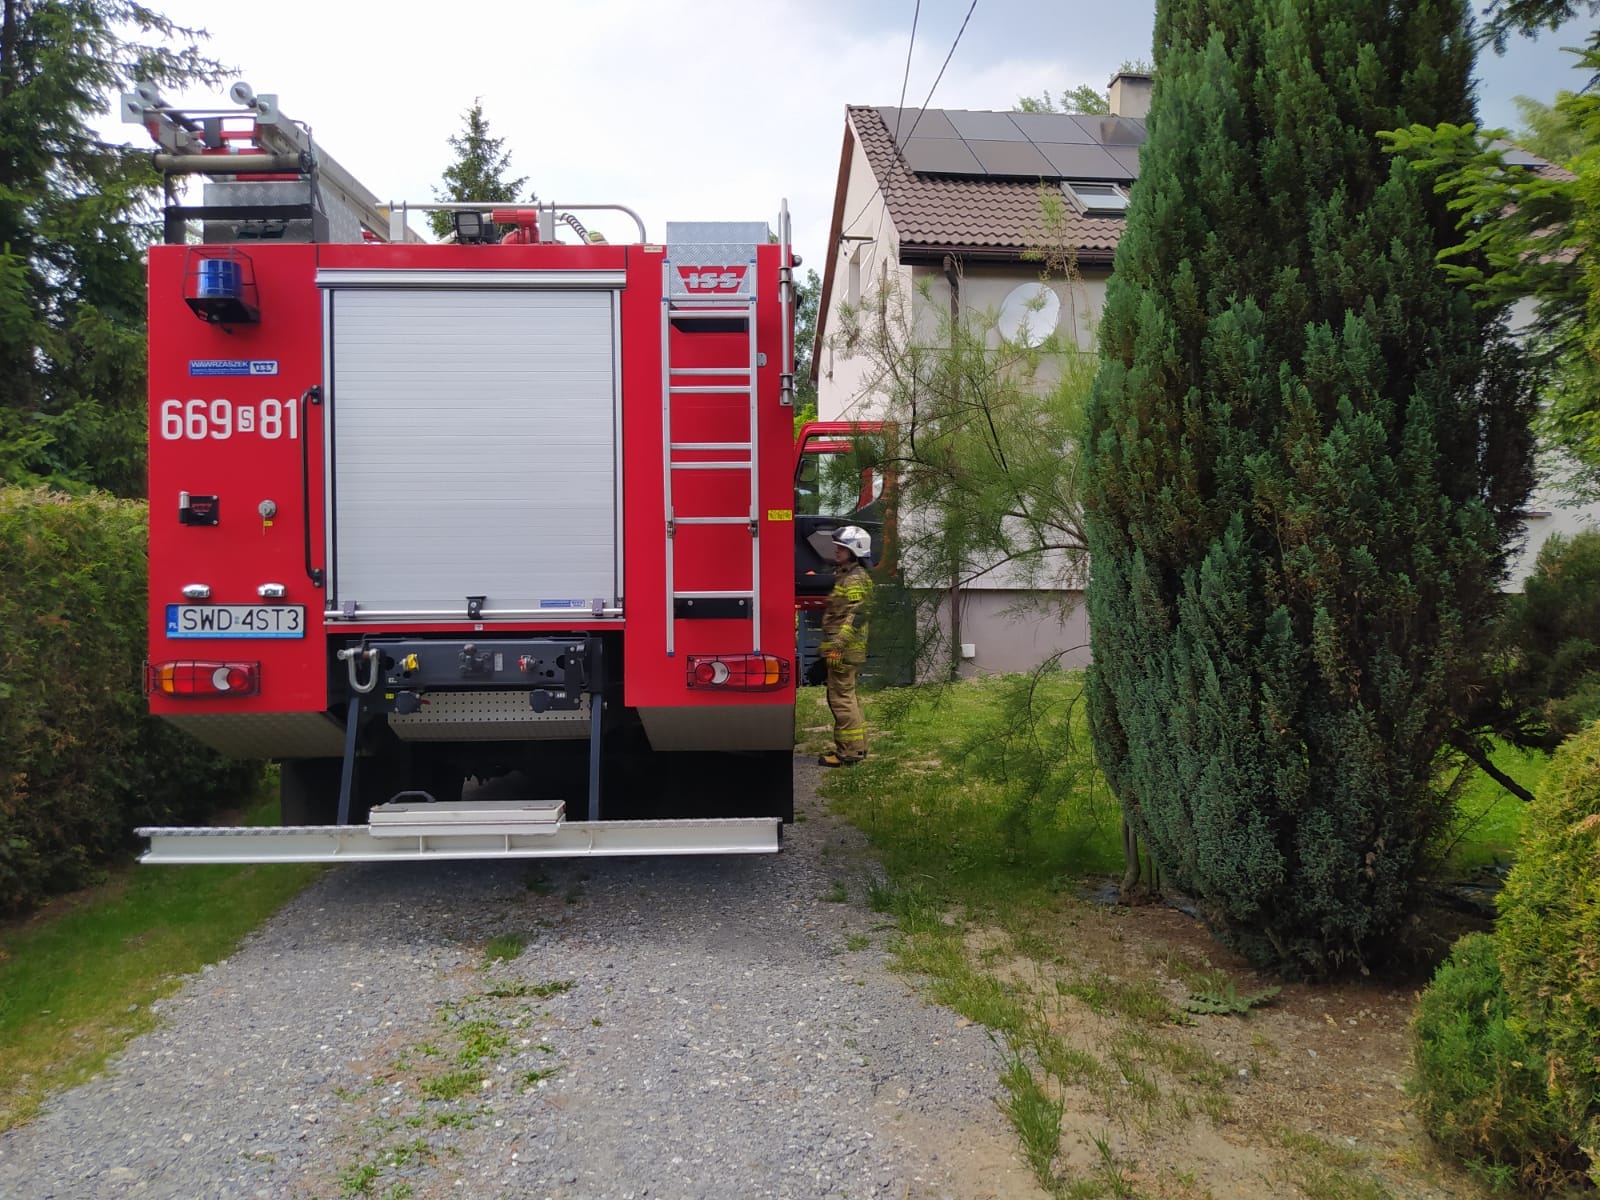 Strażacy z OSP w Syryni złapali węża i wyścili go w lesie. Pamiętajmy, że zaskrońce są objęte ochroną / fot. facebook.com/Ochotnicza-Straż-Pożarna-w-Syryni